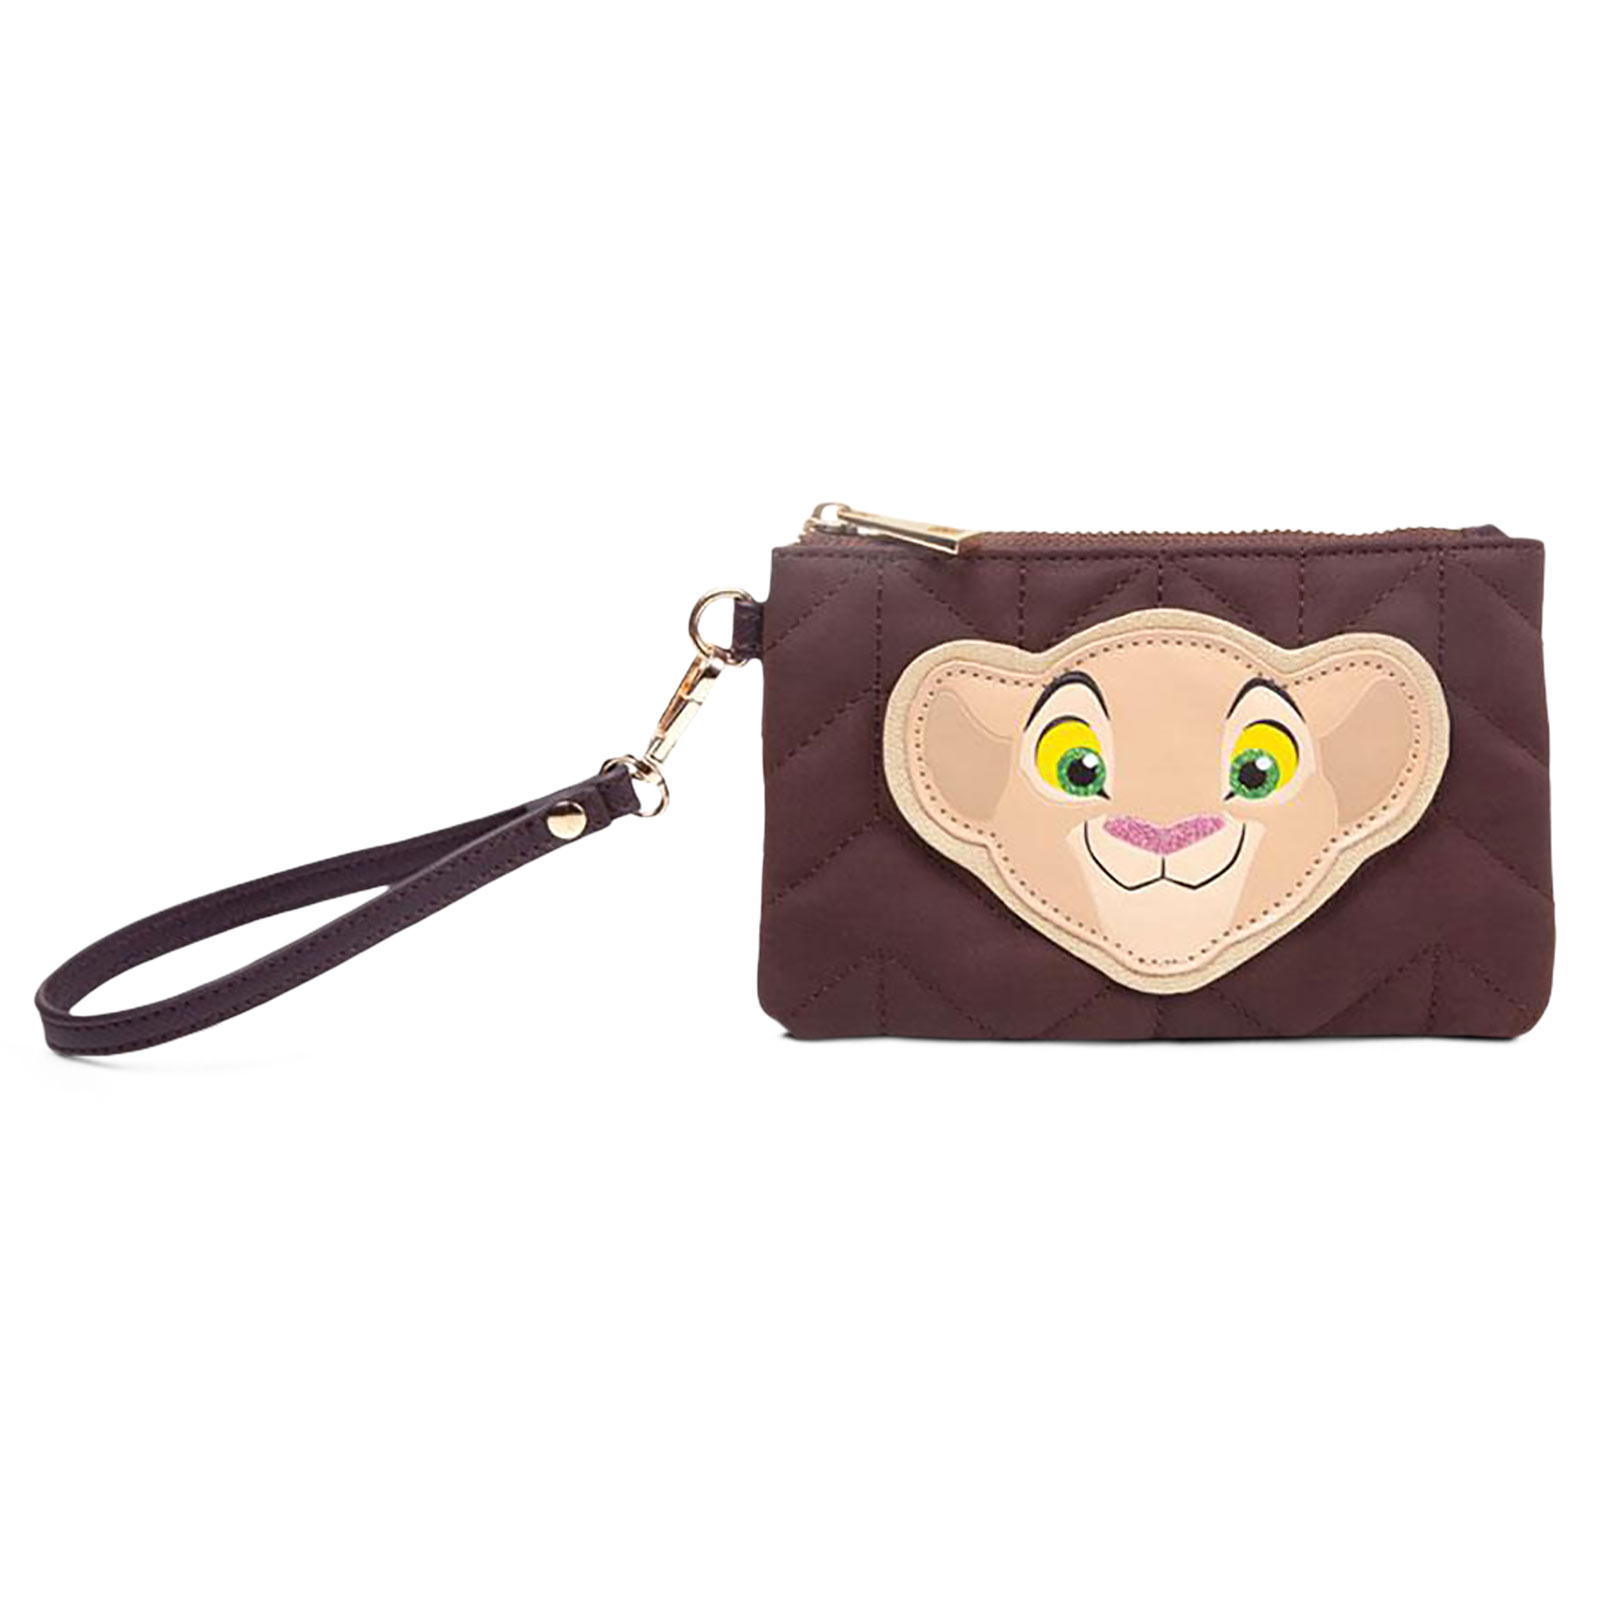 The Lion King - Nala Cosmetic Bag